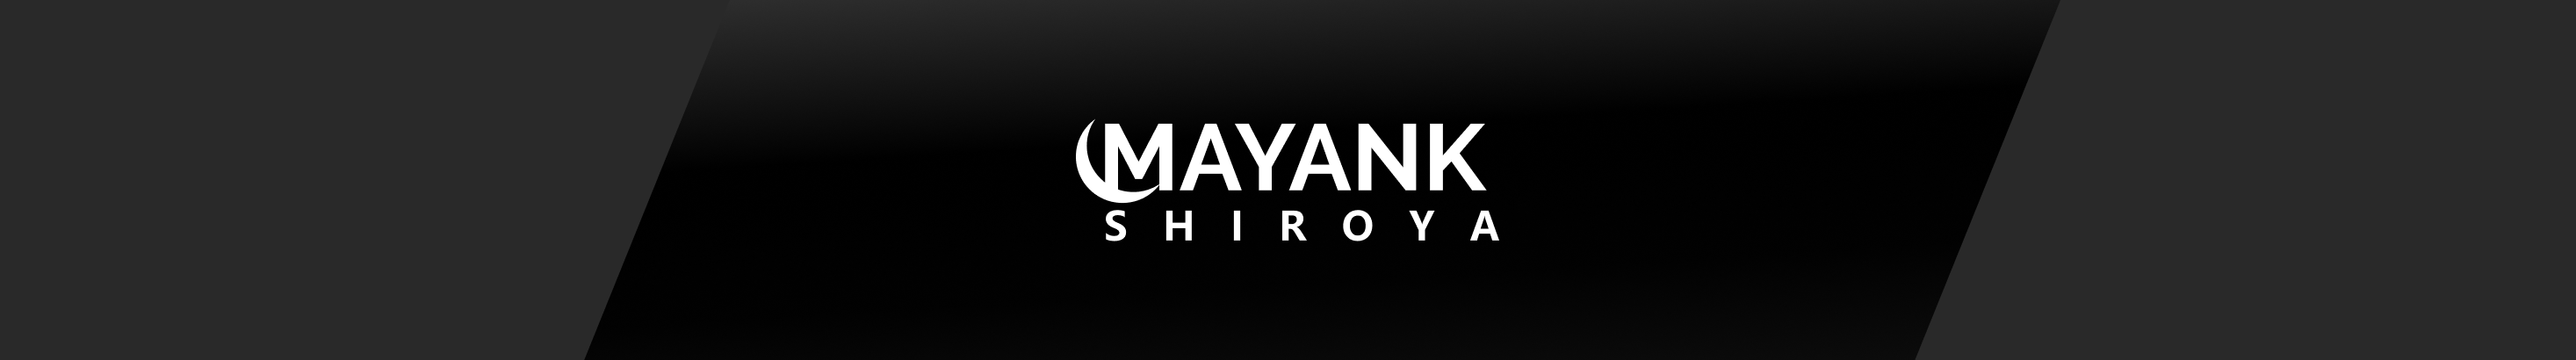 Mayank shiroya's profile banner